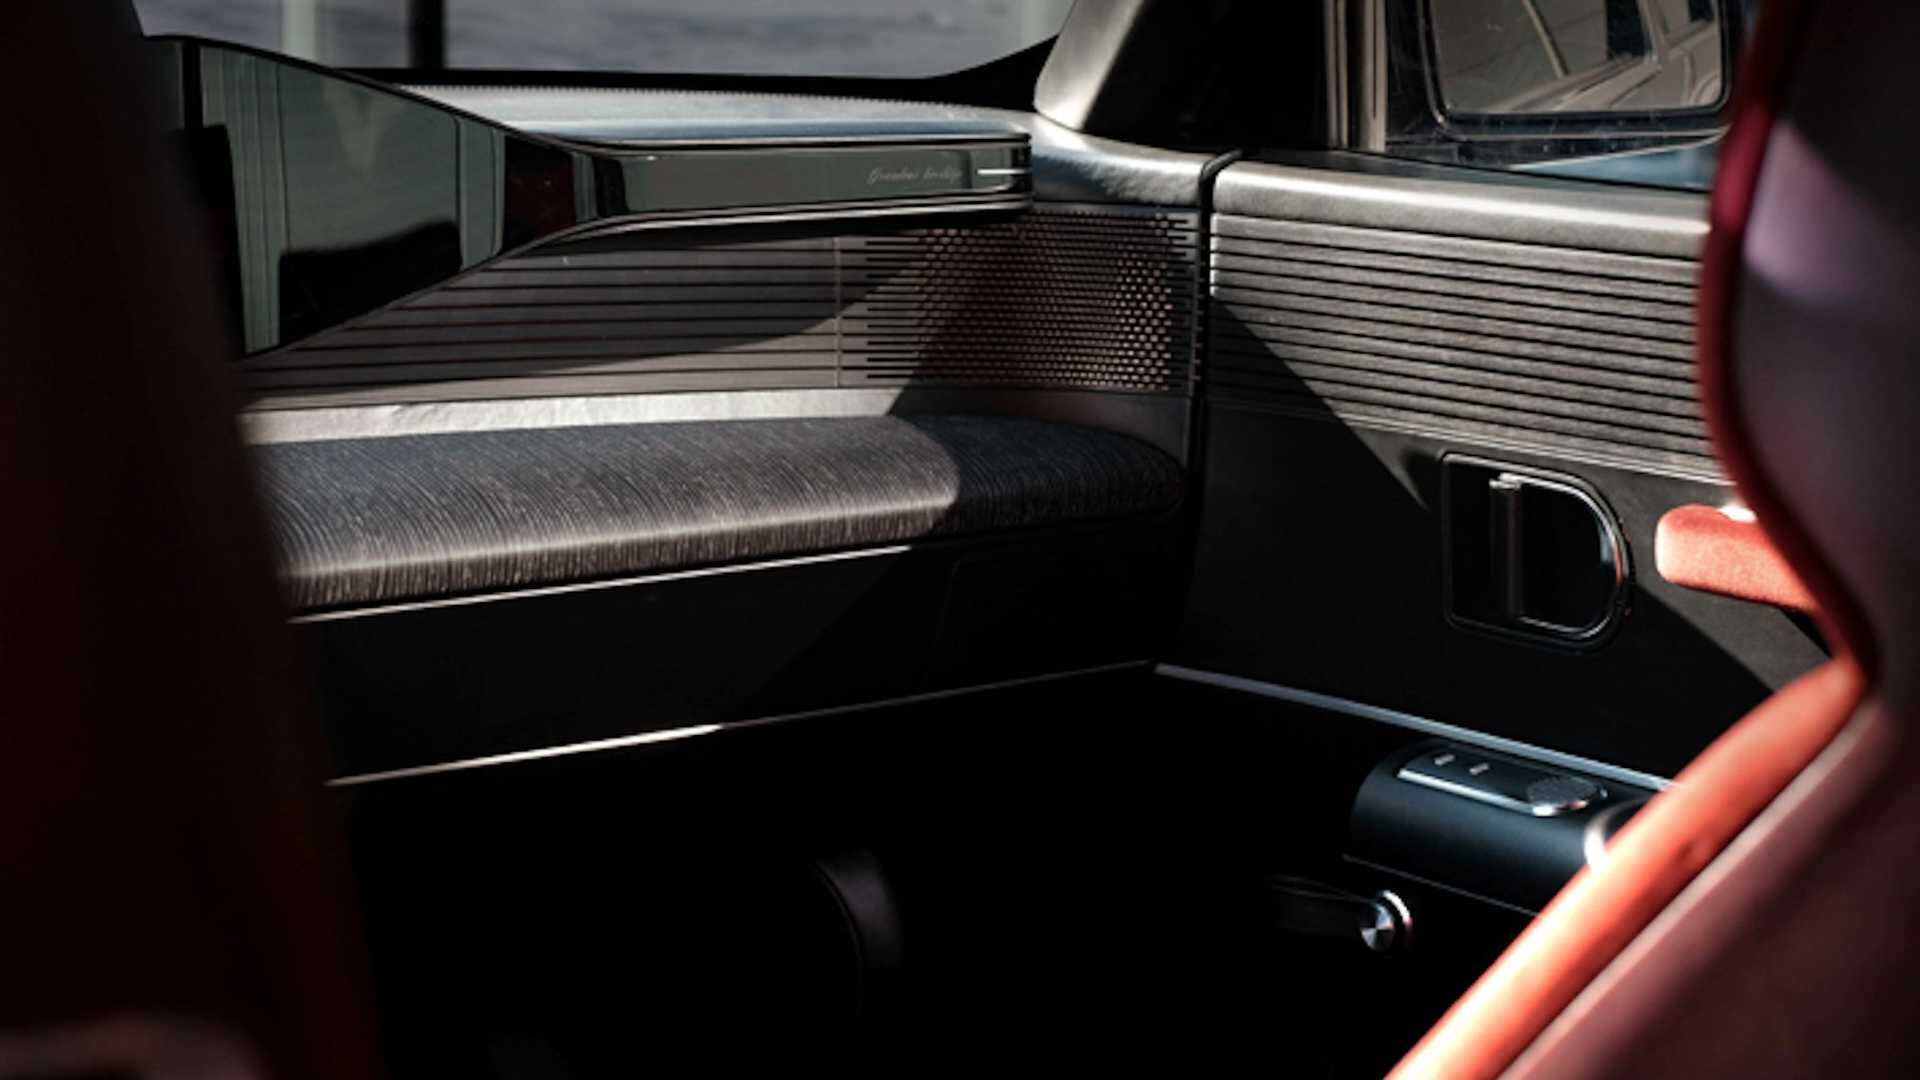 Снаружи Hyundai заменил передние и задние фонари седана 1980-х годов на современные пиксельные светодиодные блоки. Есть также новые боковые зеркала, новая облицовка кузова, новые колеса и переработанная решетка радиатора, которая имитирует узор шахма